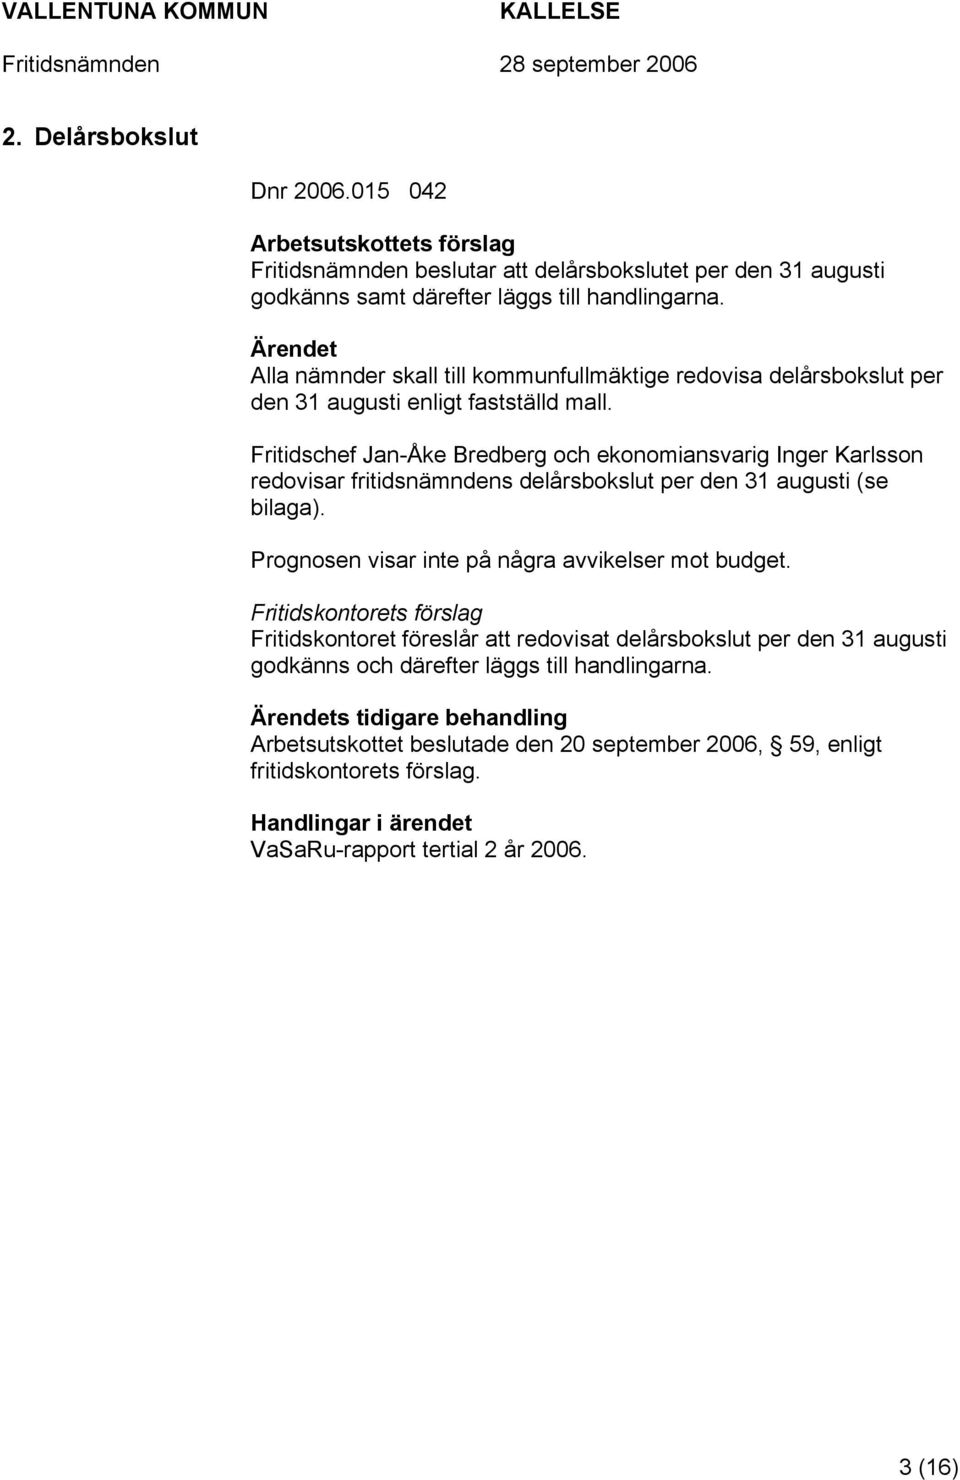 Fritidschef Jan-Åke Bredberg och ekonomiansvarig Inger Karlsson redovisar fritidsnämndens delårsbokslut per den 31 augusti (se bilaga). Prognosen visar inte på några avvikelser mot budget.